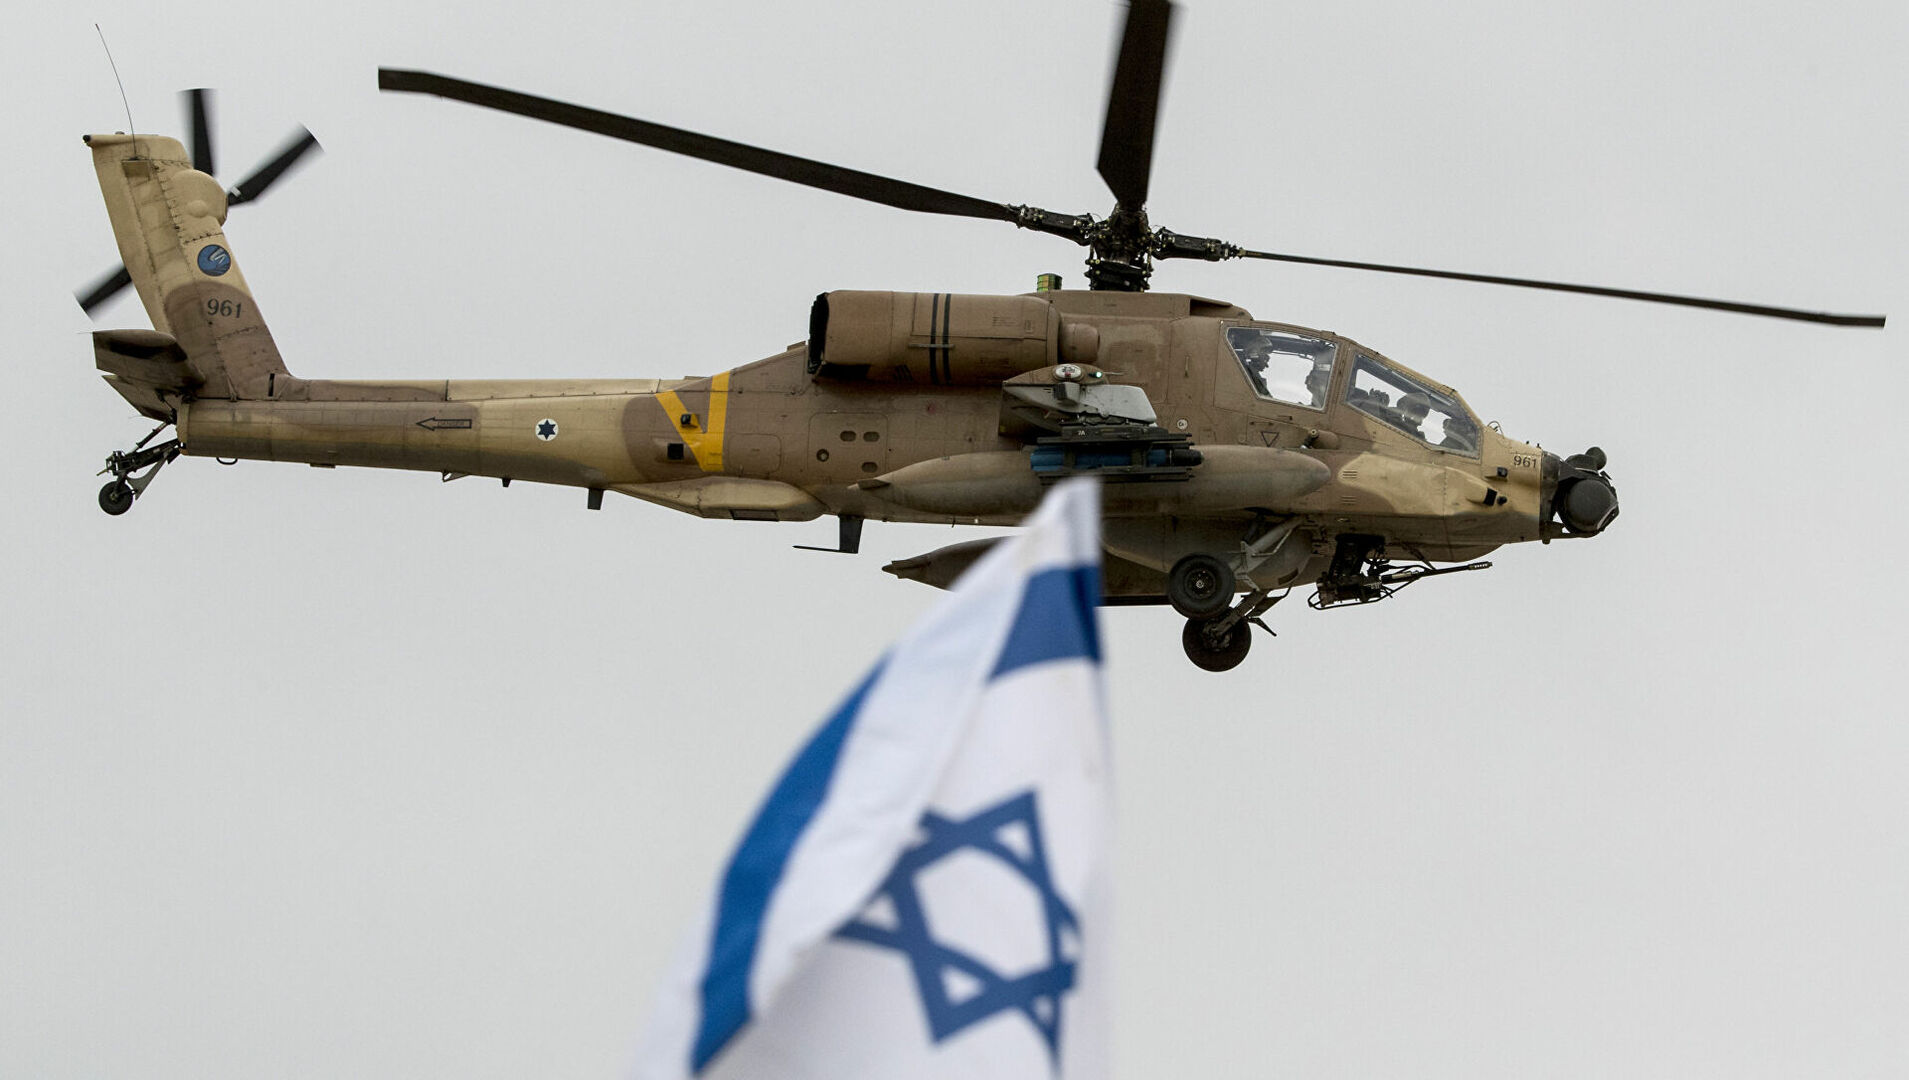 الجيش الإسرائيلي: تعرض مروحية لأضرار وإصابة 3 ضباط بجروح